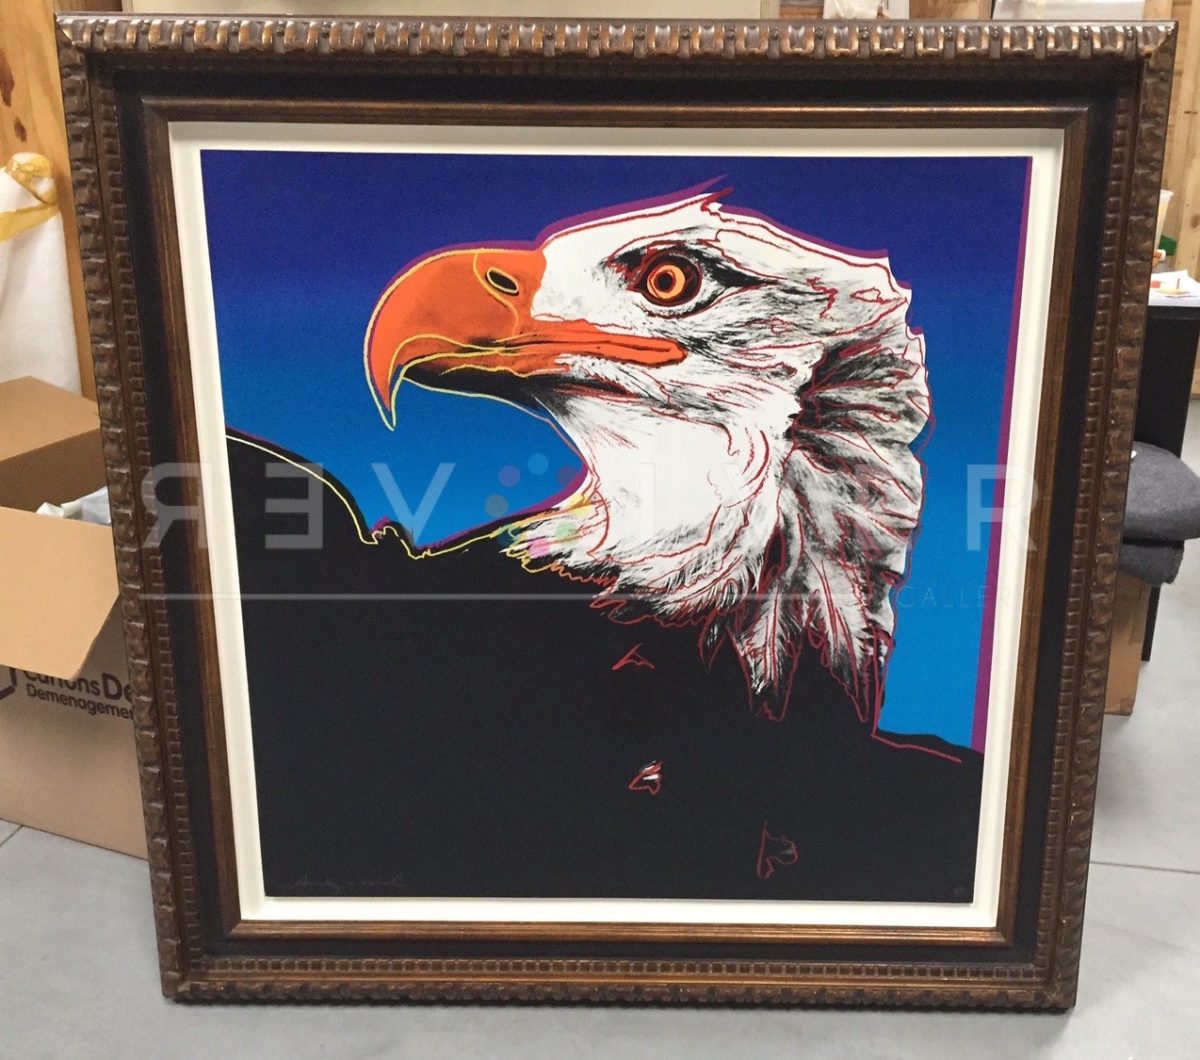 Andy Warhol Bald Eagle 296 screenprint in frame.